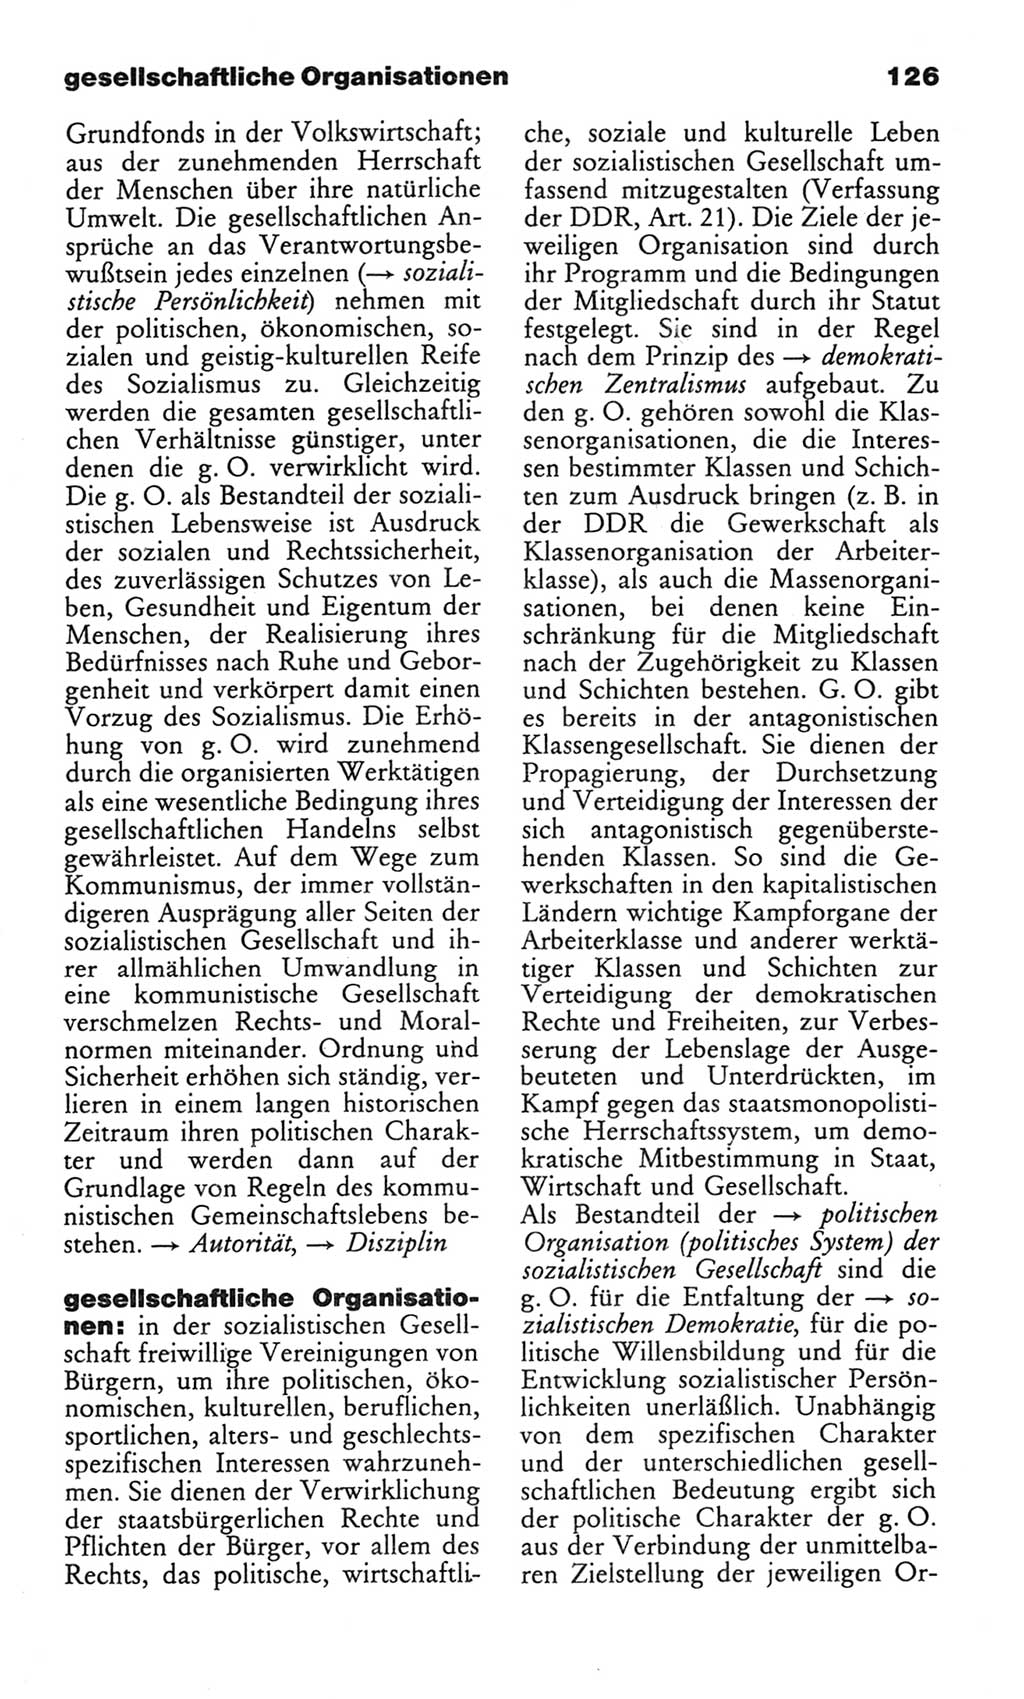 Wörterbuch des wissenschaftlichen Kommunismus [Deutsche Demokratische Republik (DDR)] 1982, Seite 126 (Wb. wiss. Komm. DDR 1982, S. 126)